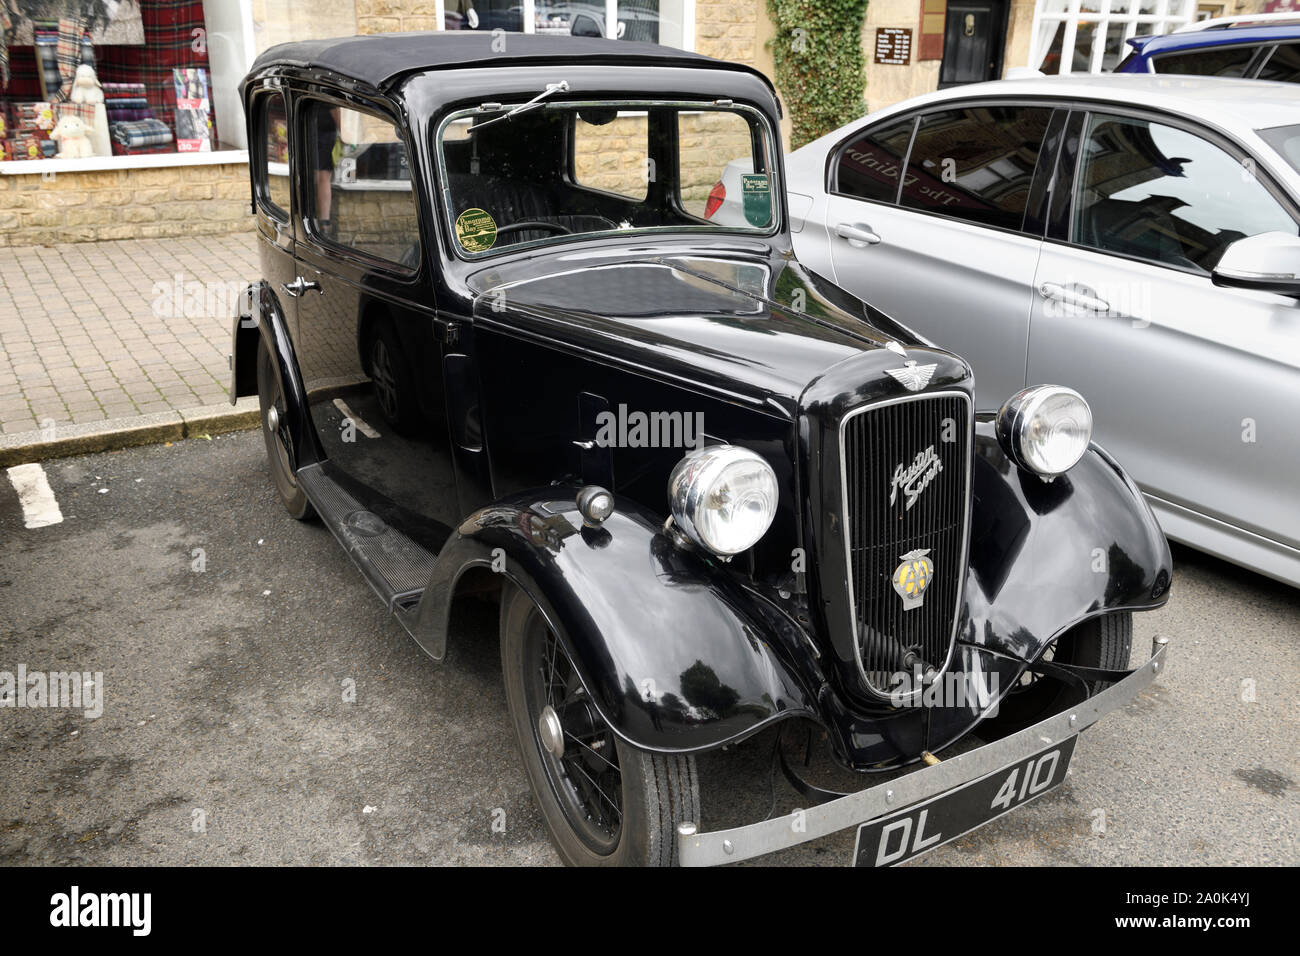 1937 Austin Seven noir classique Ascot voiture garée sur la rue Bourton-on-the-Water District Angleterre Cotswold Banque D'Images